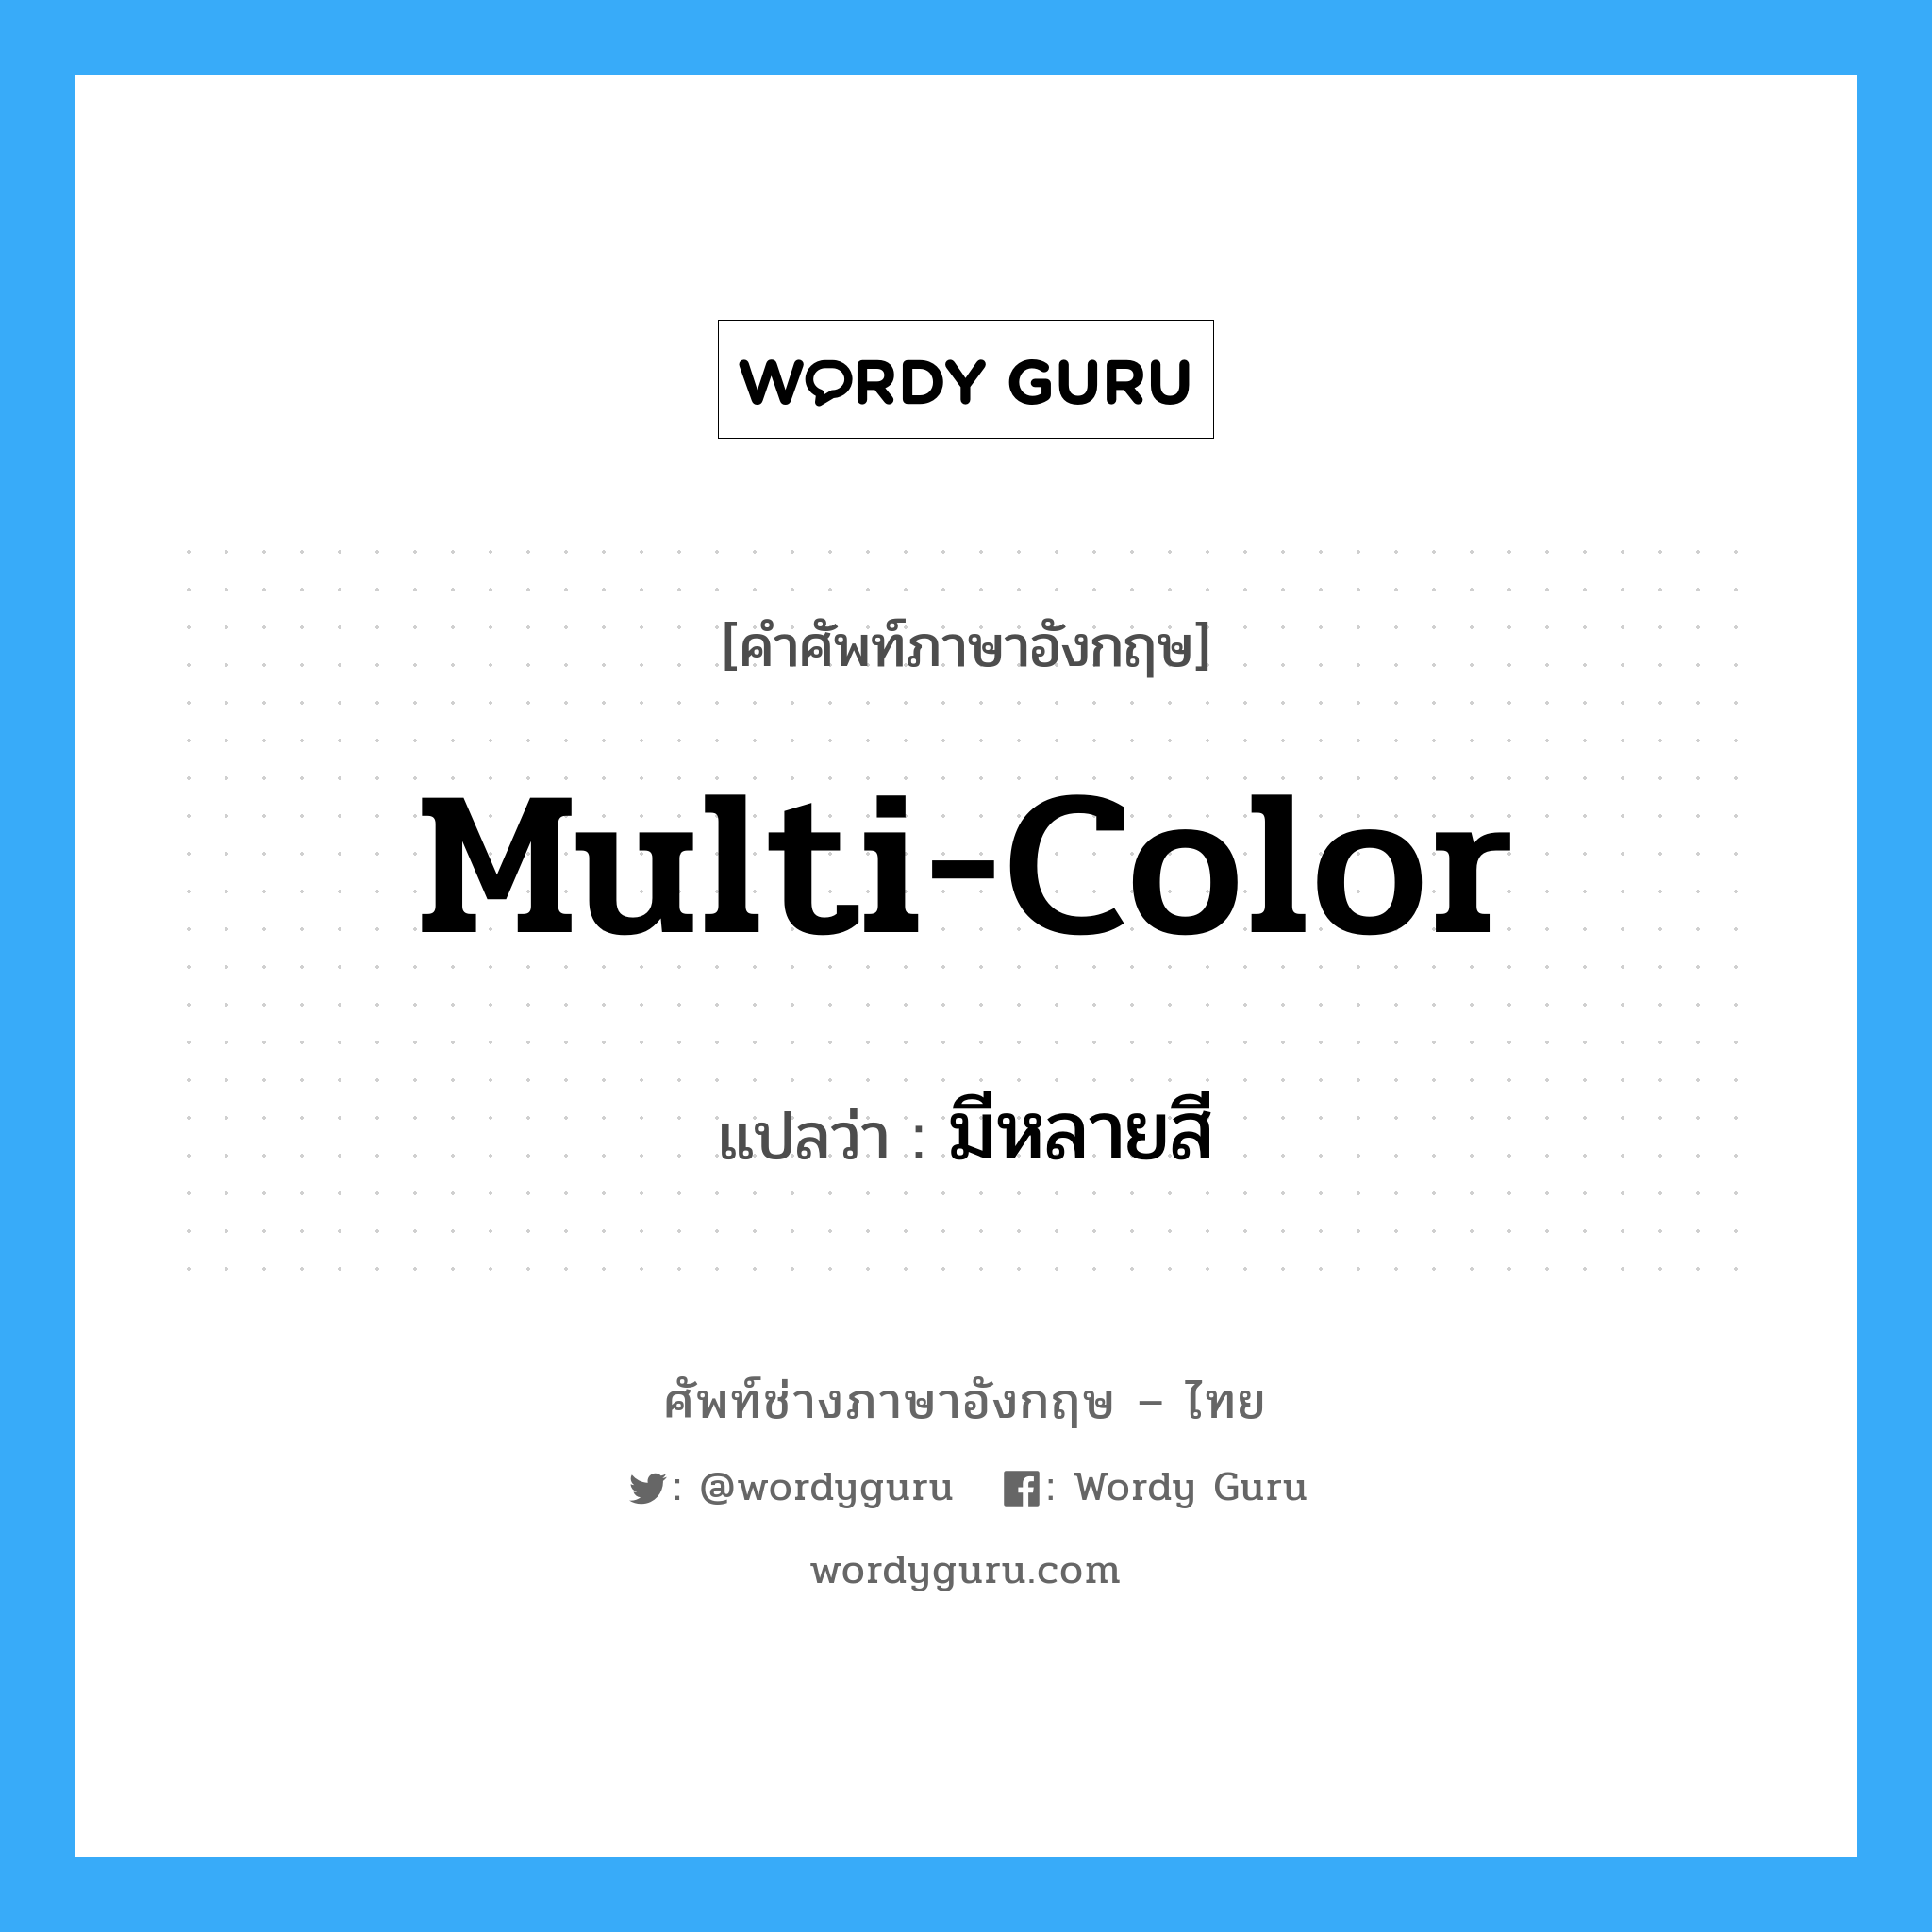 มีหลายสี ภาษาอังกฤษ?, คำศัพท์ช่างภาษาอังกฤษ - ไทย มีหลายสี คำศัพท์ภาษาอังกฤษ มีหลายสี แปลว่า multi-color